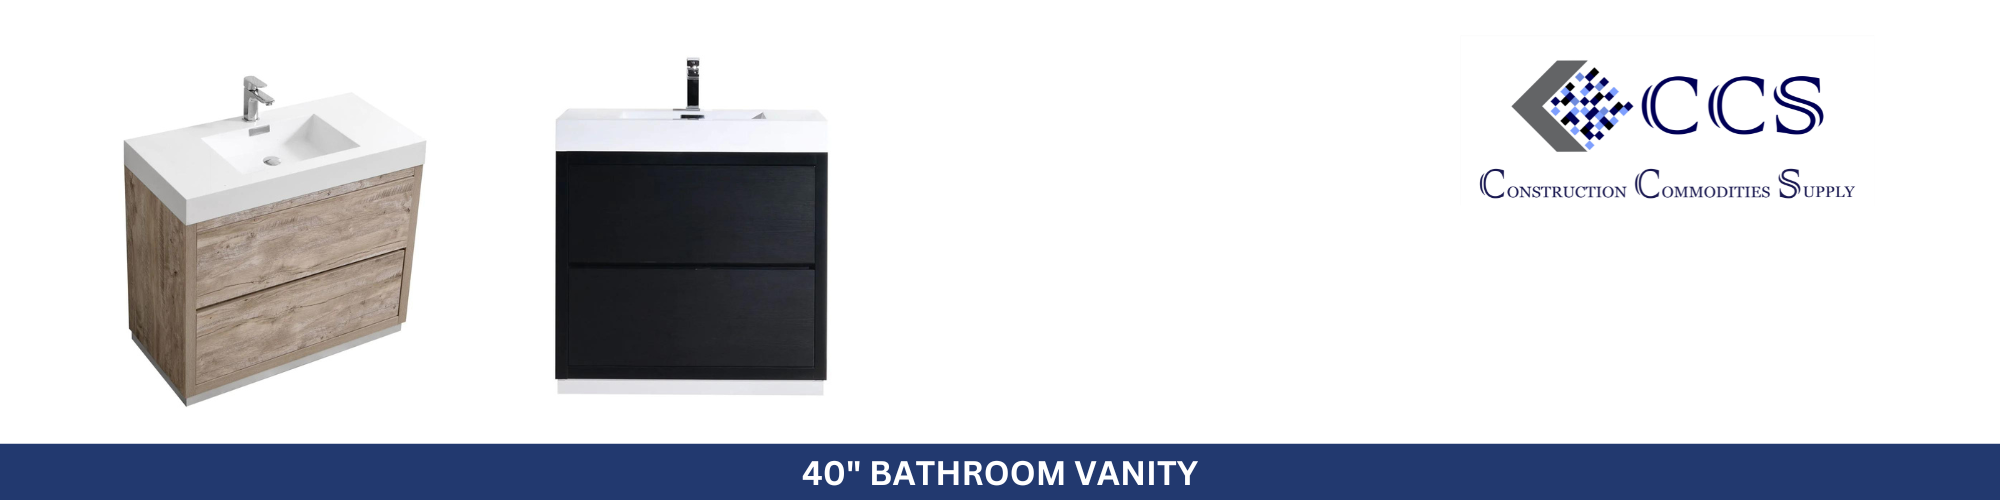 40" Bathroom Vanity